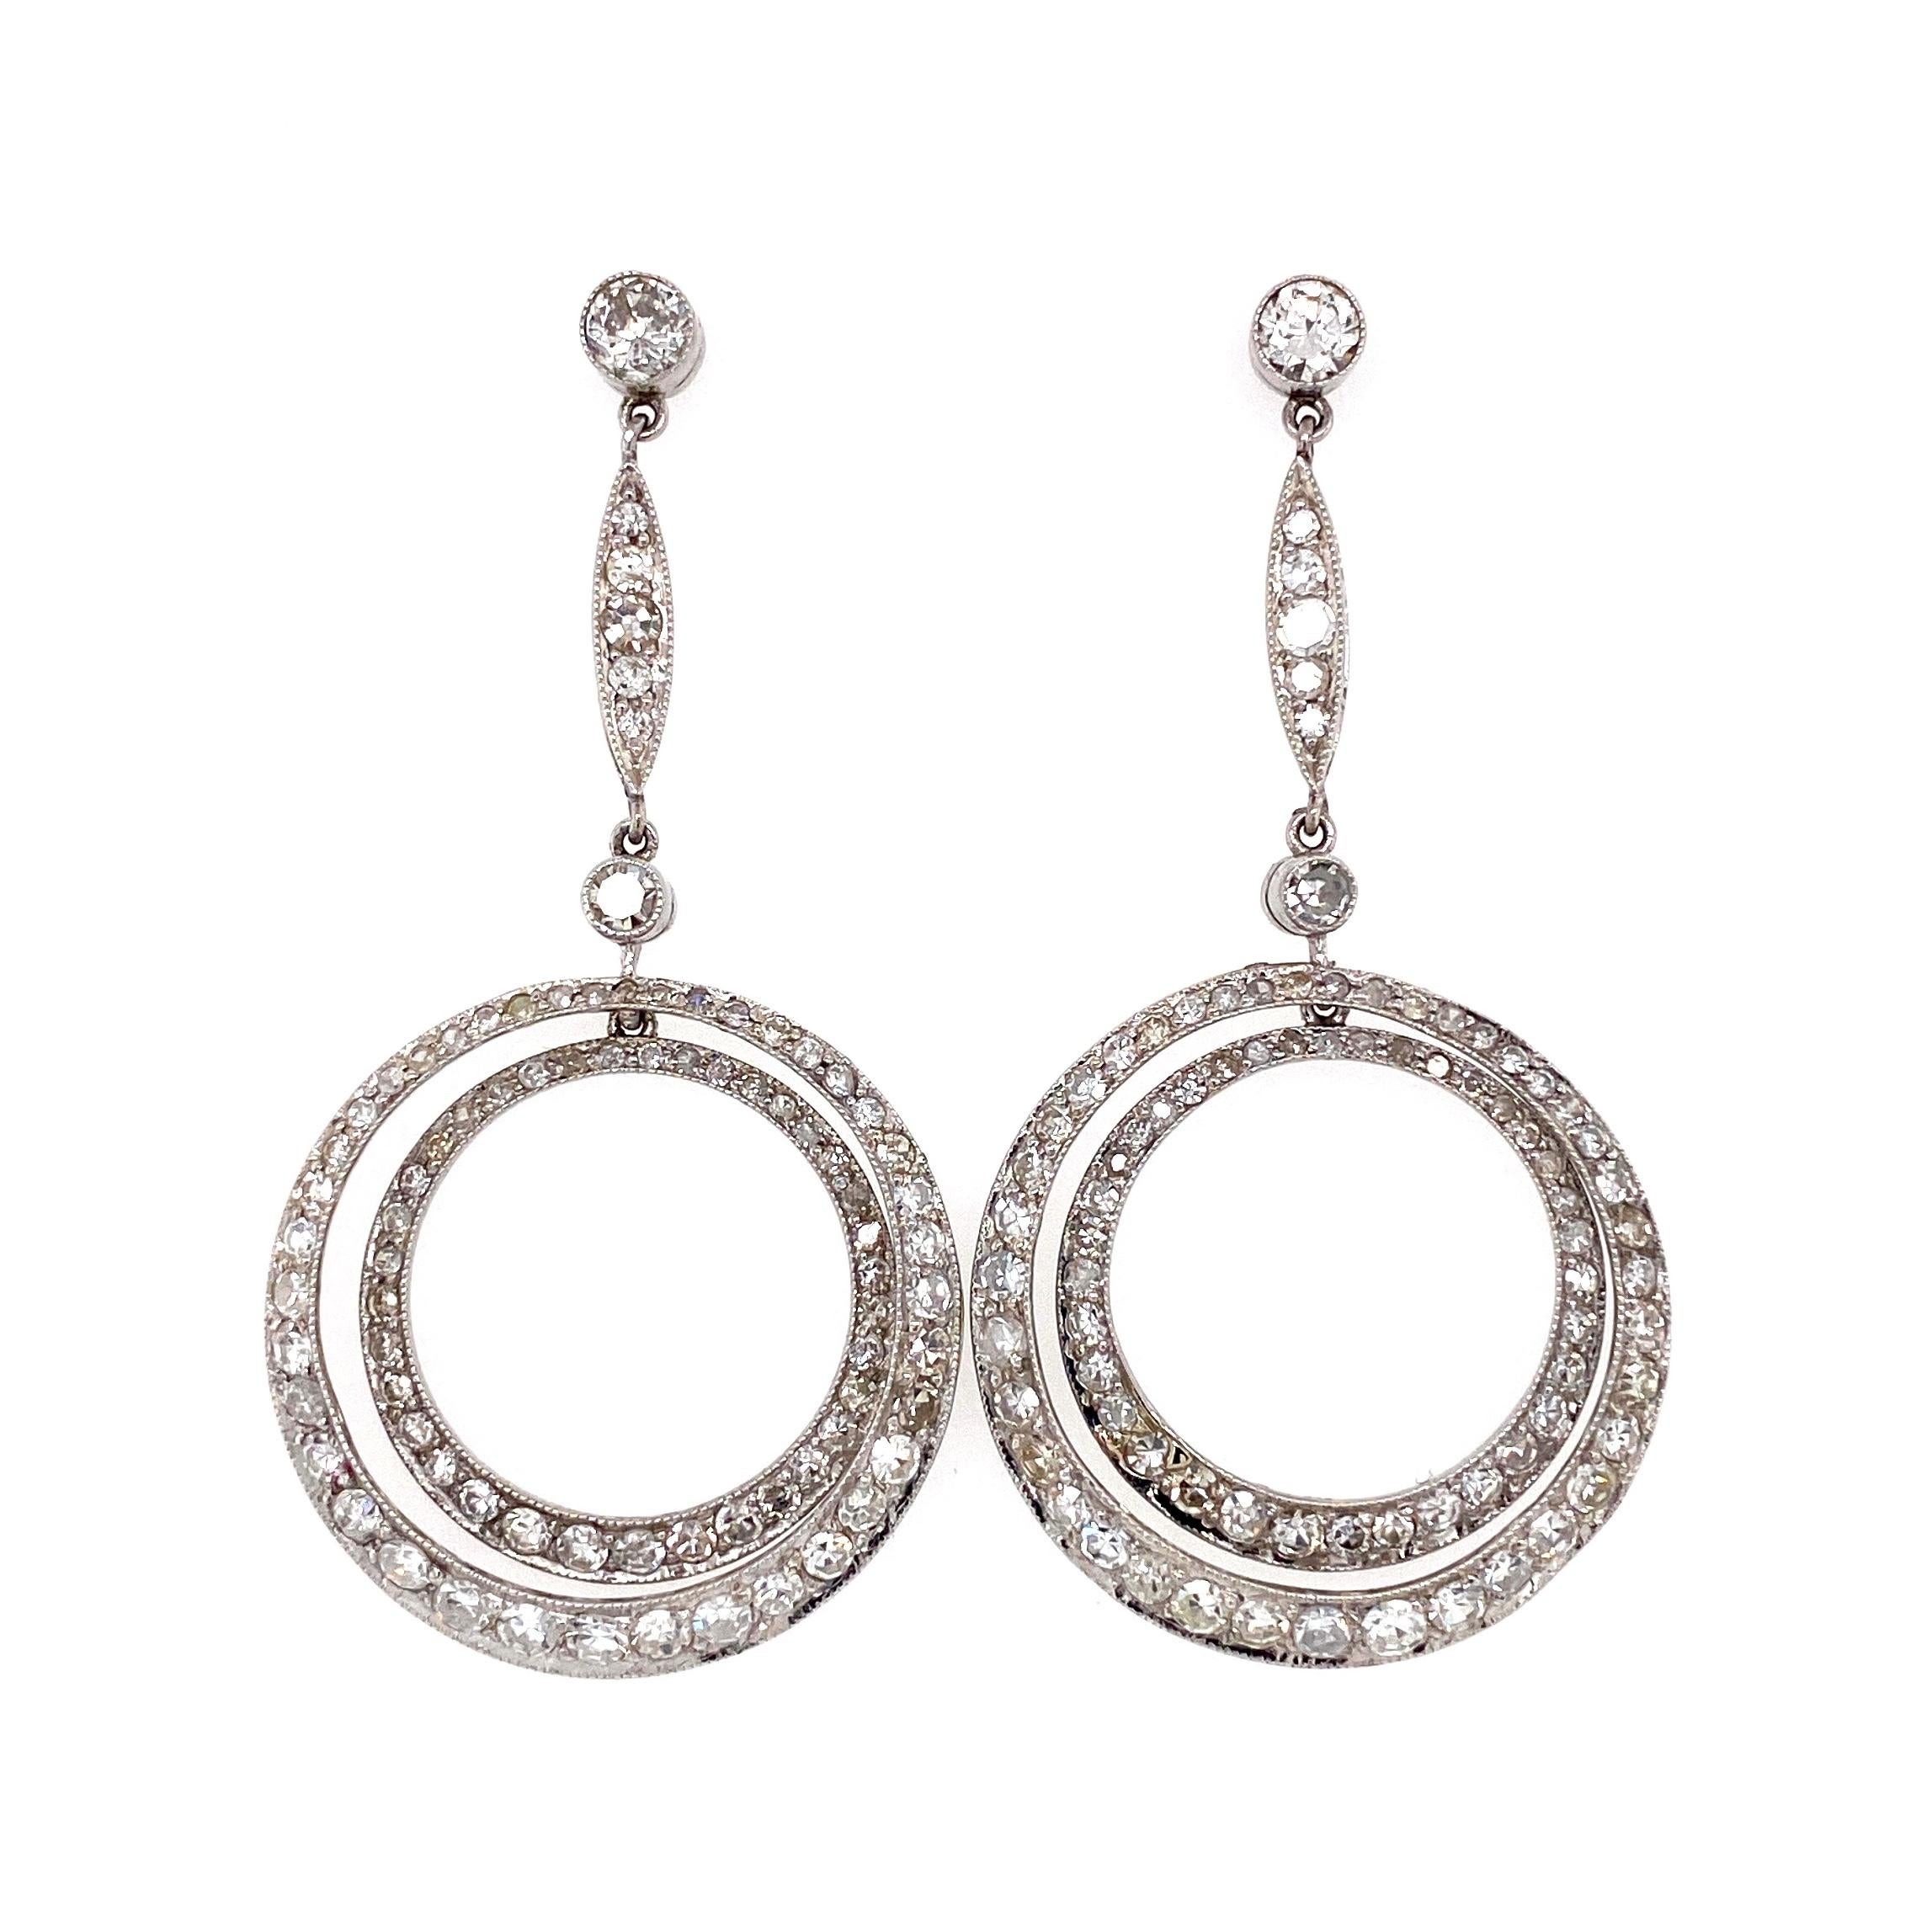 Einfach schön! Fein detaillierte Art Deco Revival Double Circle Diamond Drop Ohrringe. Handgefertigt aus Platin und von Hand mit runden Diamanten besetzt, ca. 4,50 tcw. Ohrringe messen ca. 2